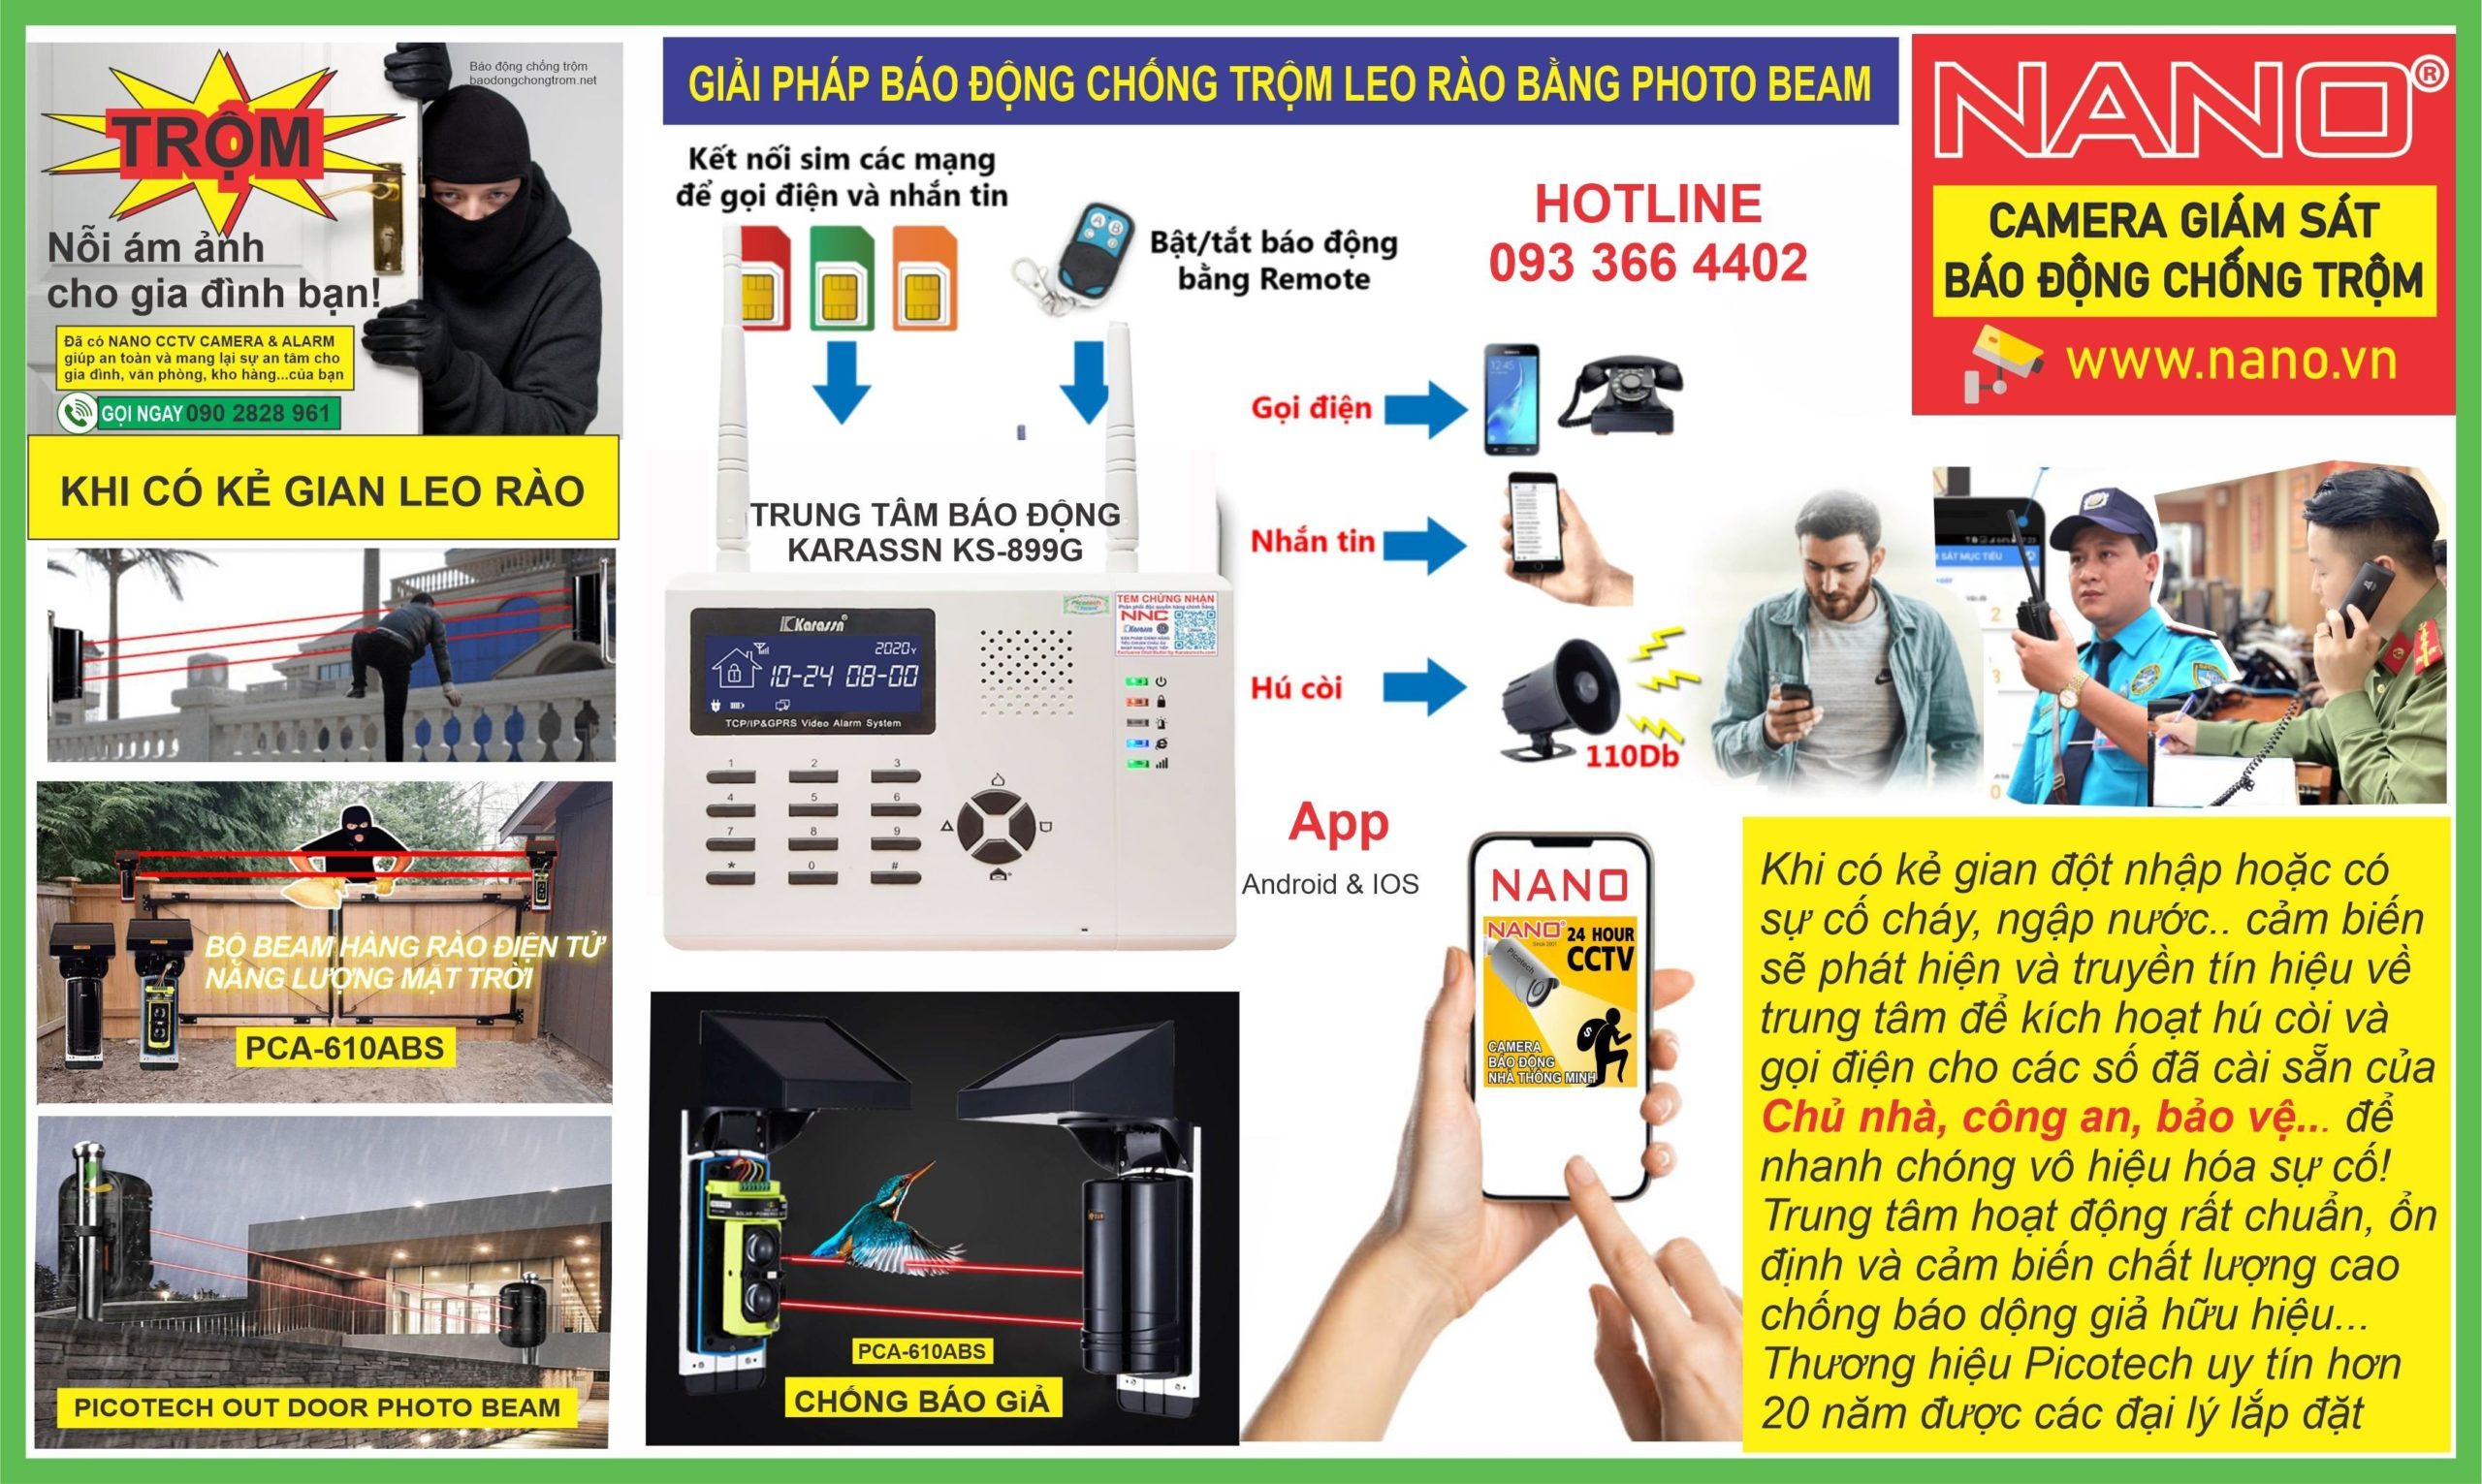 Top3 Cty cung cấp giải pháp báo động chống trộm leo rào bằng photobeam 1